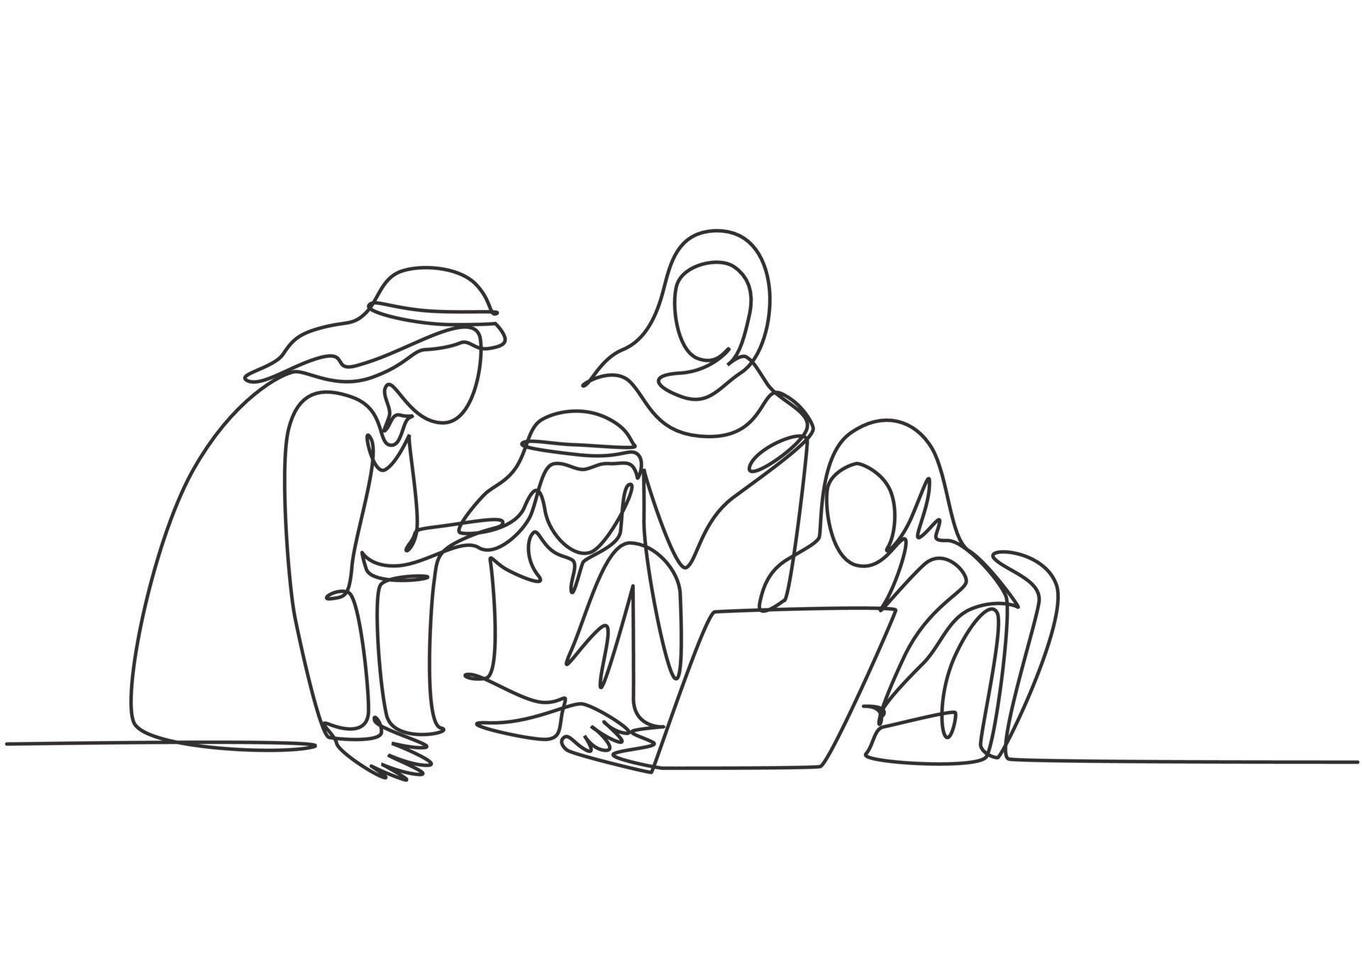 um único desenho de linha da comunidade empresarial jovem muçulmana discutindo projeto social juntos. pano da Arábia Saudita shmag, lenço na cabeça, ghutra, hijab, véu. ilustração em vetor desenho desenho em linha contínua